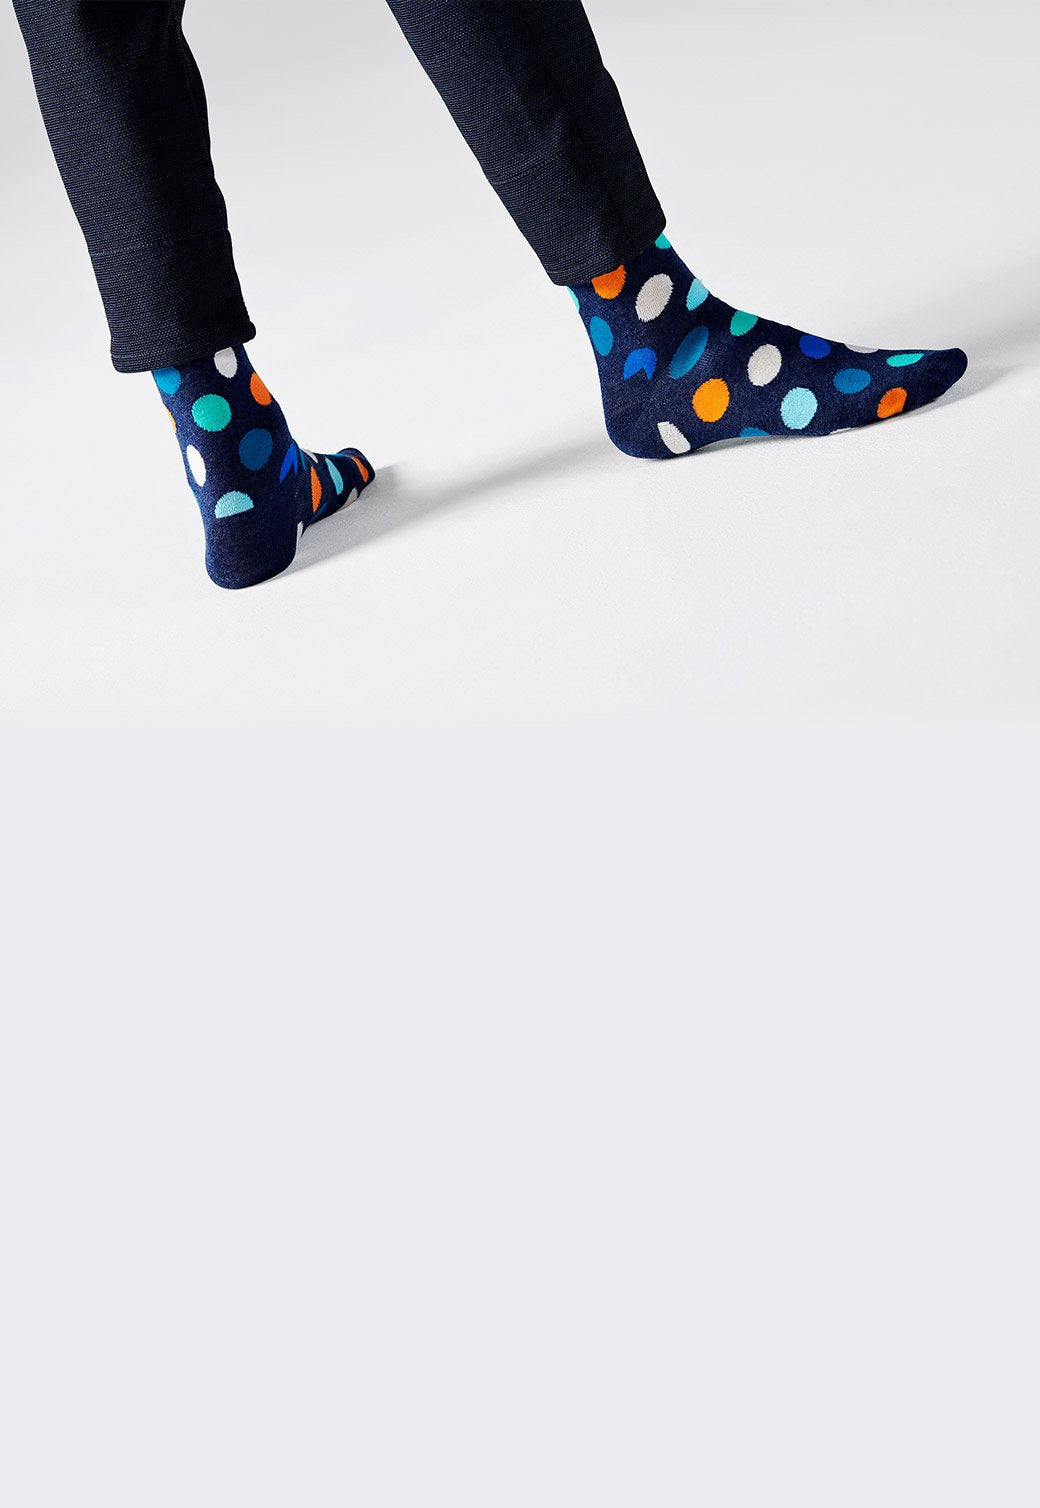 זוג גרביים צבעוניות בהדפס נקודות